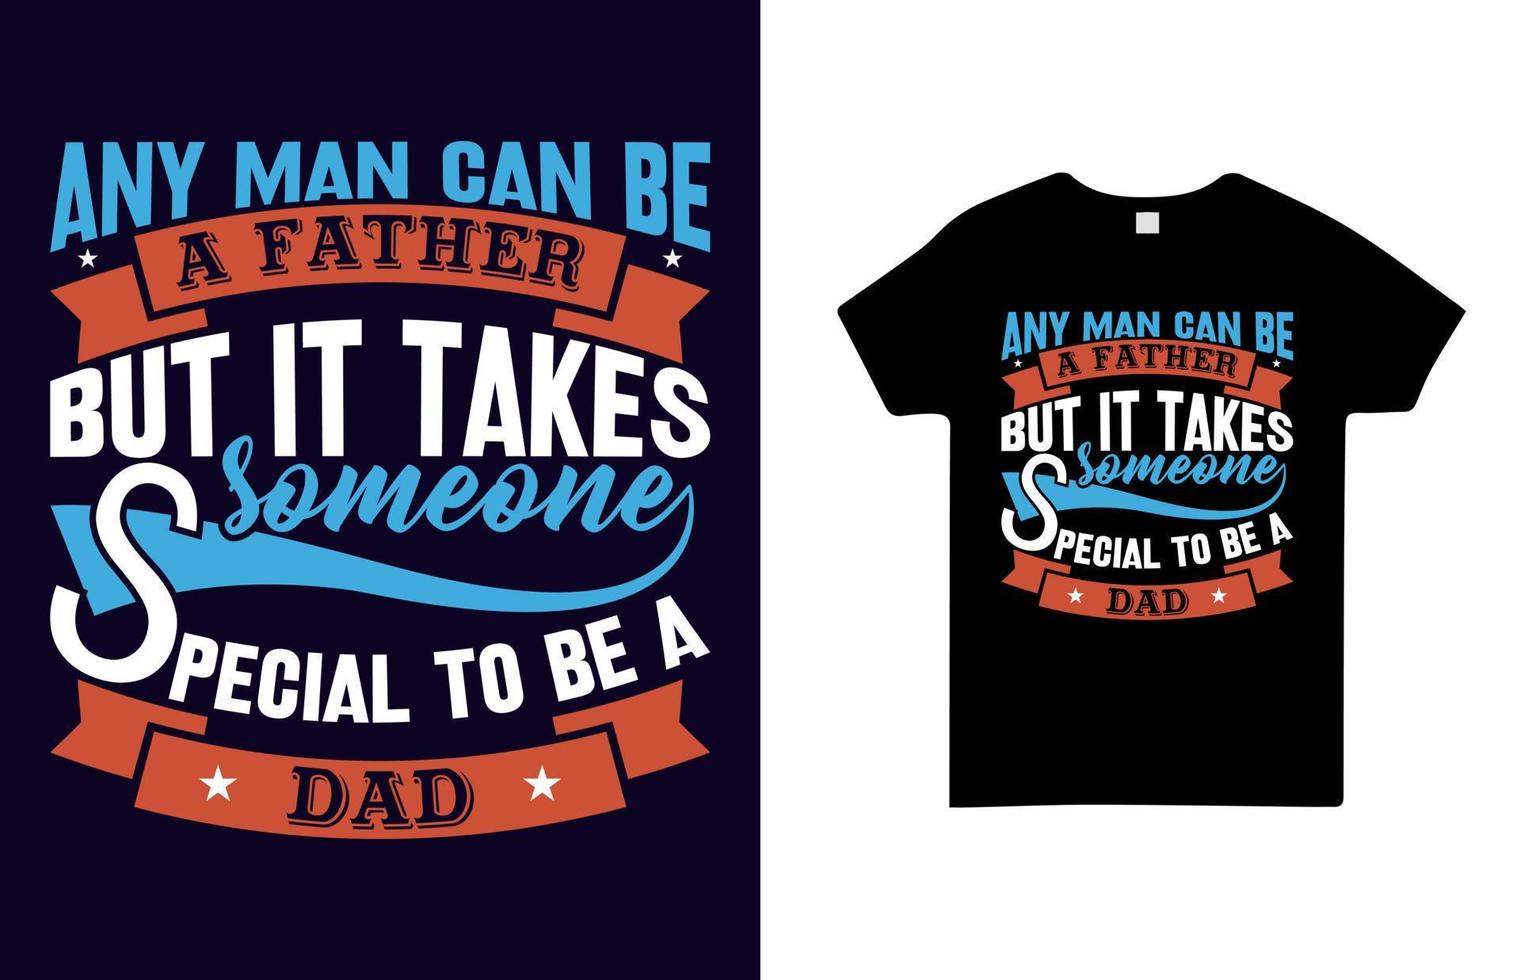 elke man kan een vader zijn, maar er is een speciaal iemand voor nodig om een vader te zijn t-shirtontwerp gratis vector